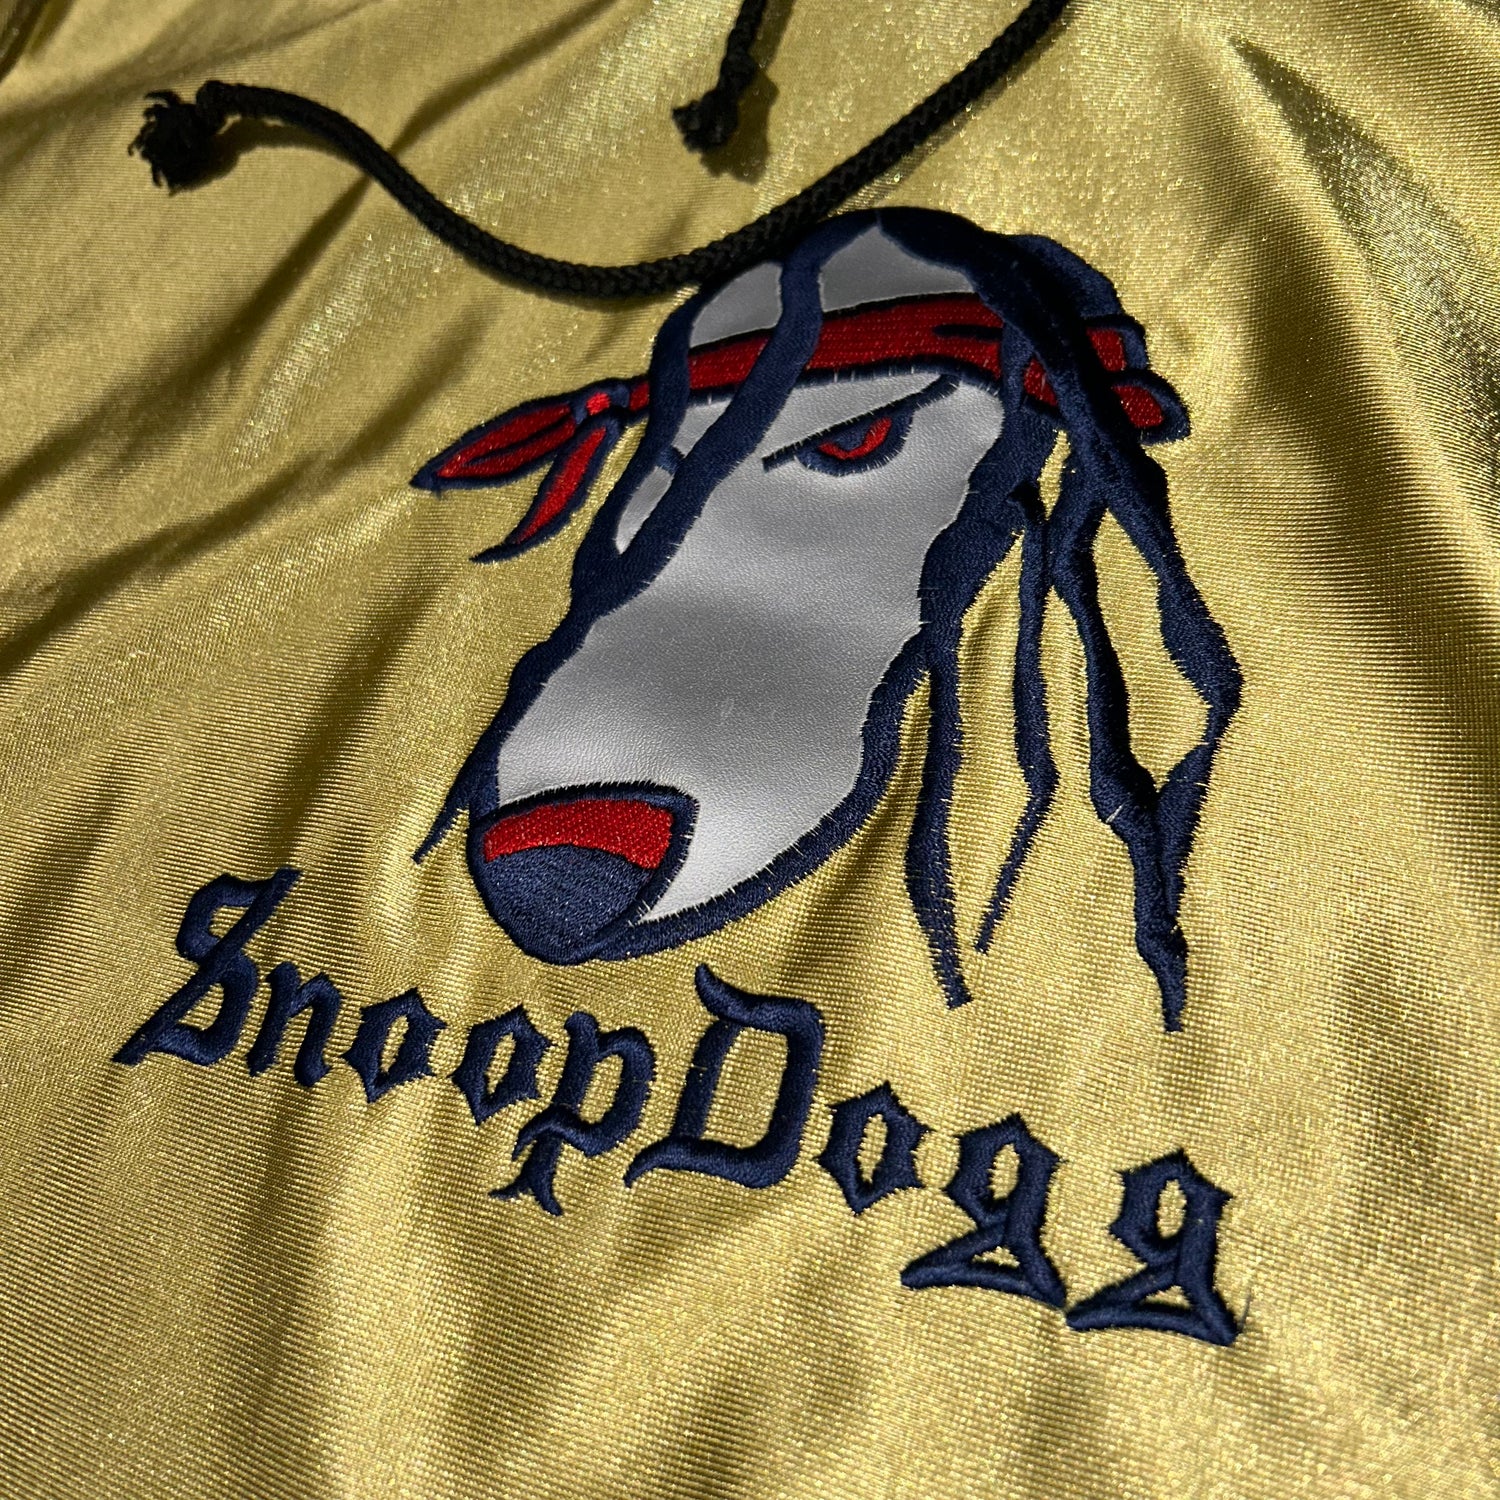 Jersey Snoop Dogg (L)